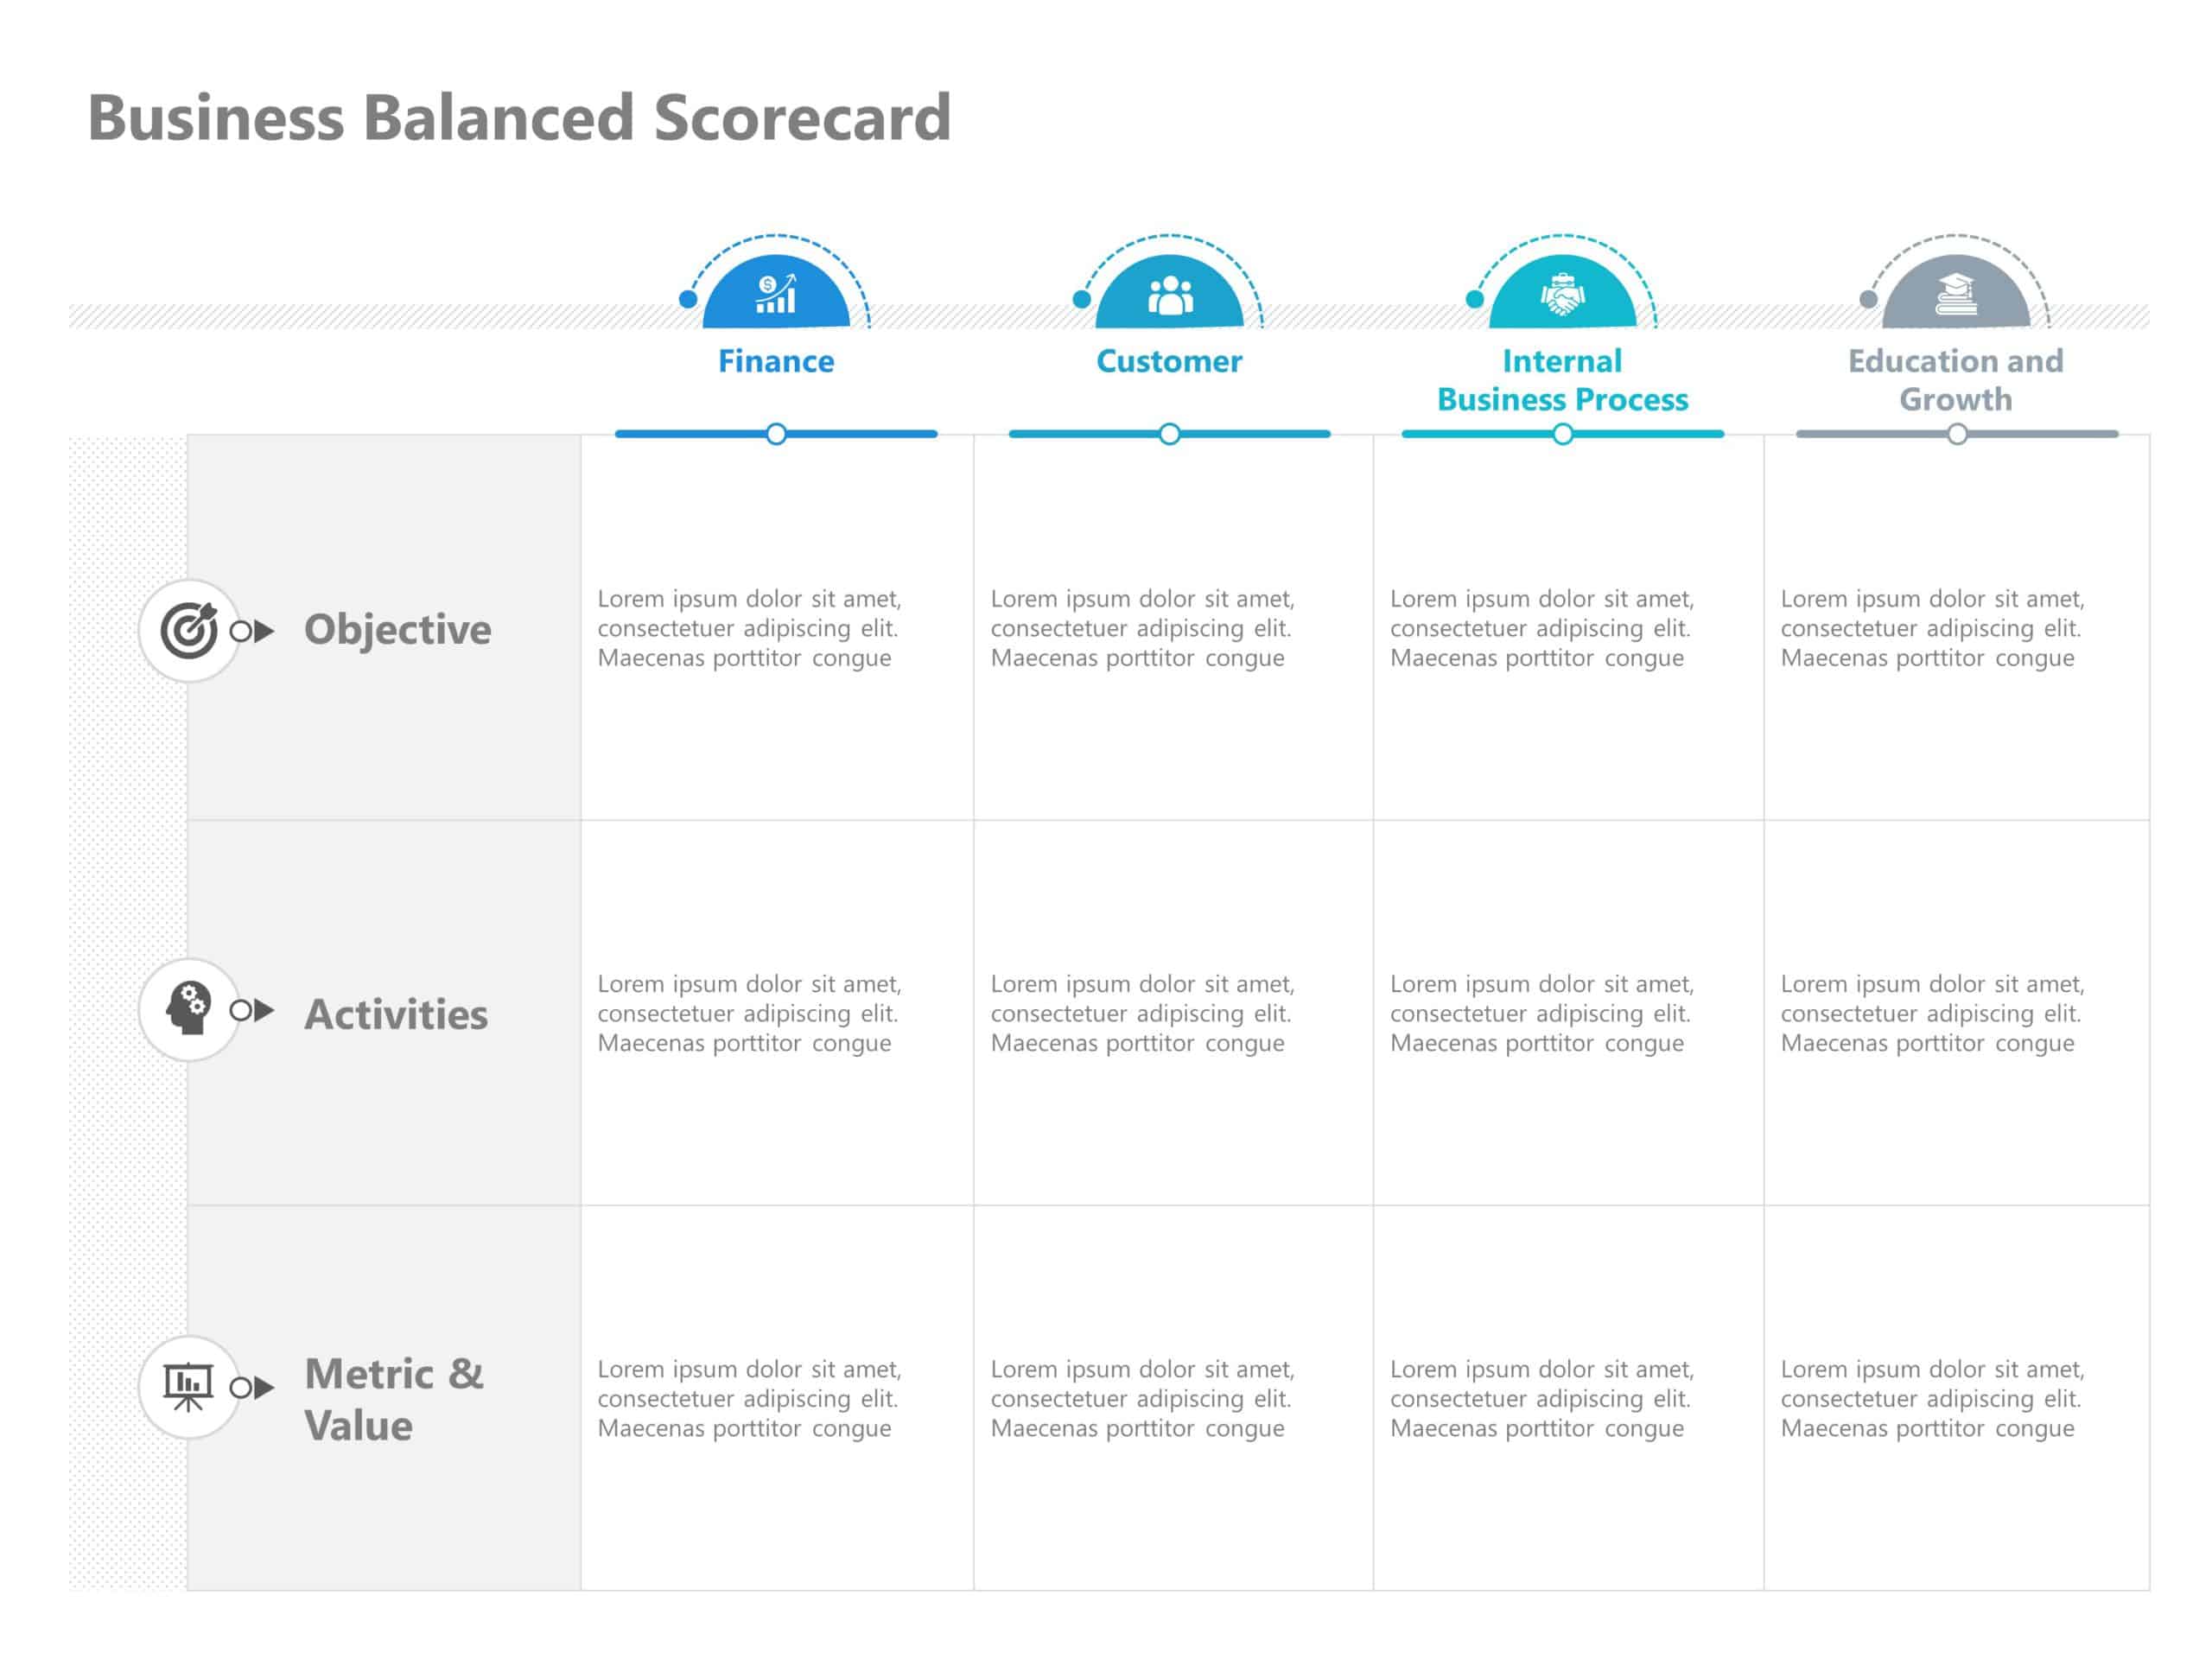 Business Balanced Scorecard PowerPoint Template